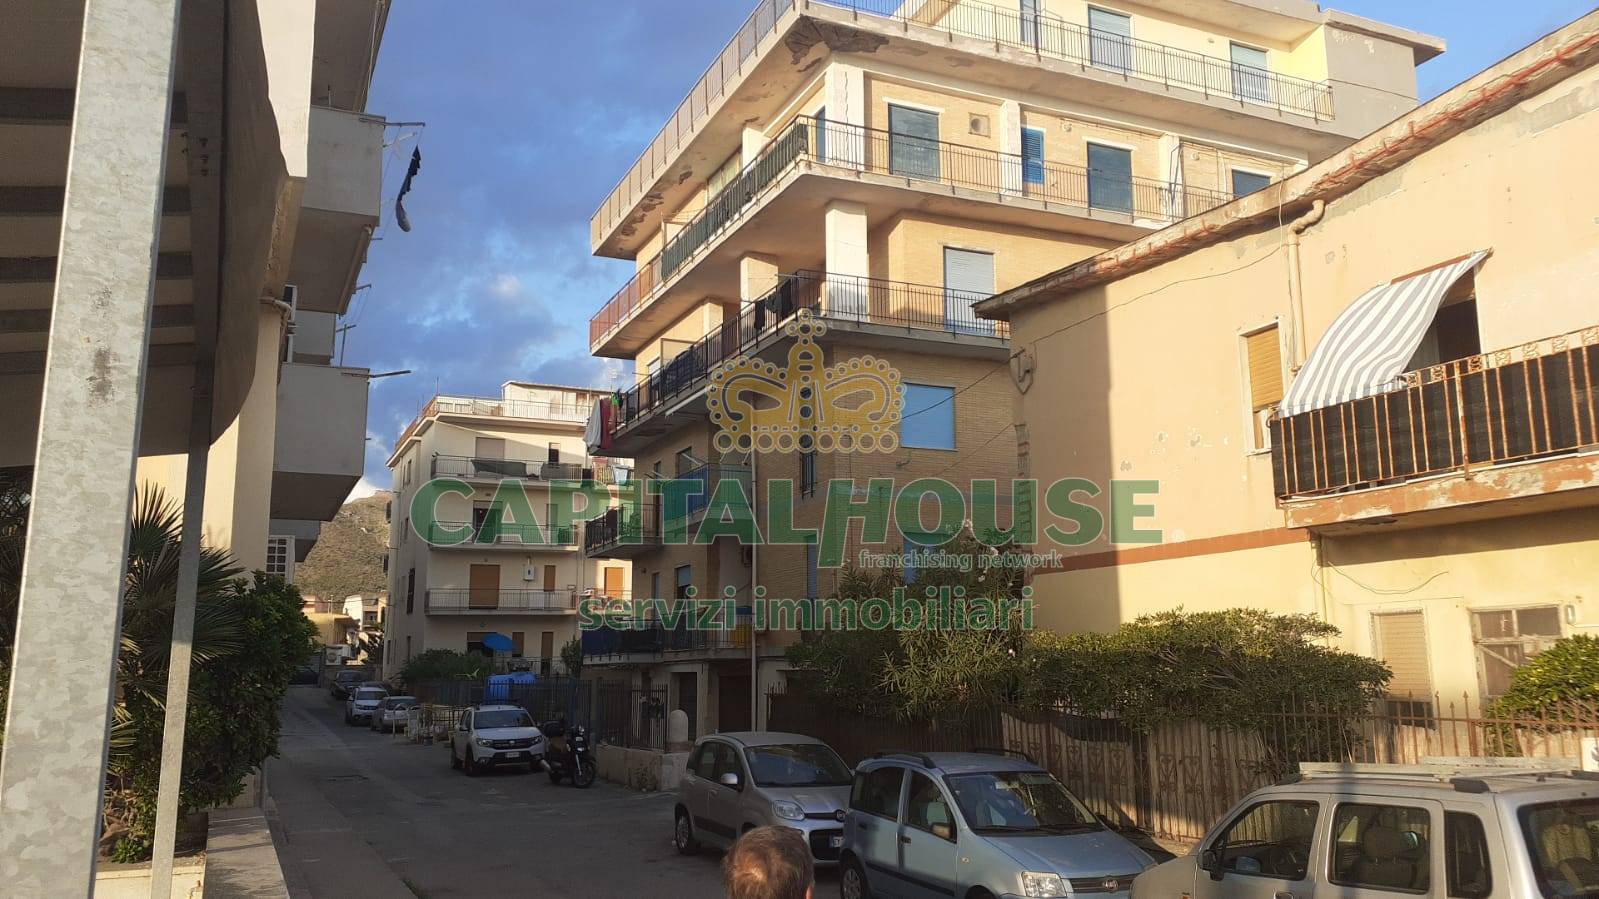 Appartamento in vendita a Mondragone, 3 locali, zona Località: ZonaLido, prezzo € 50.000 | CambioCasa.it